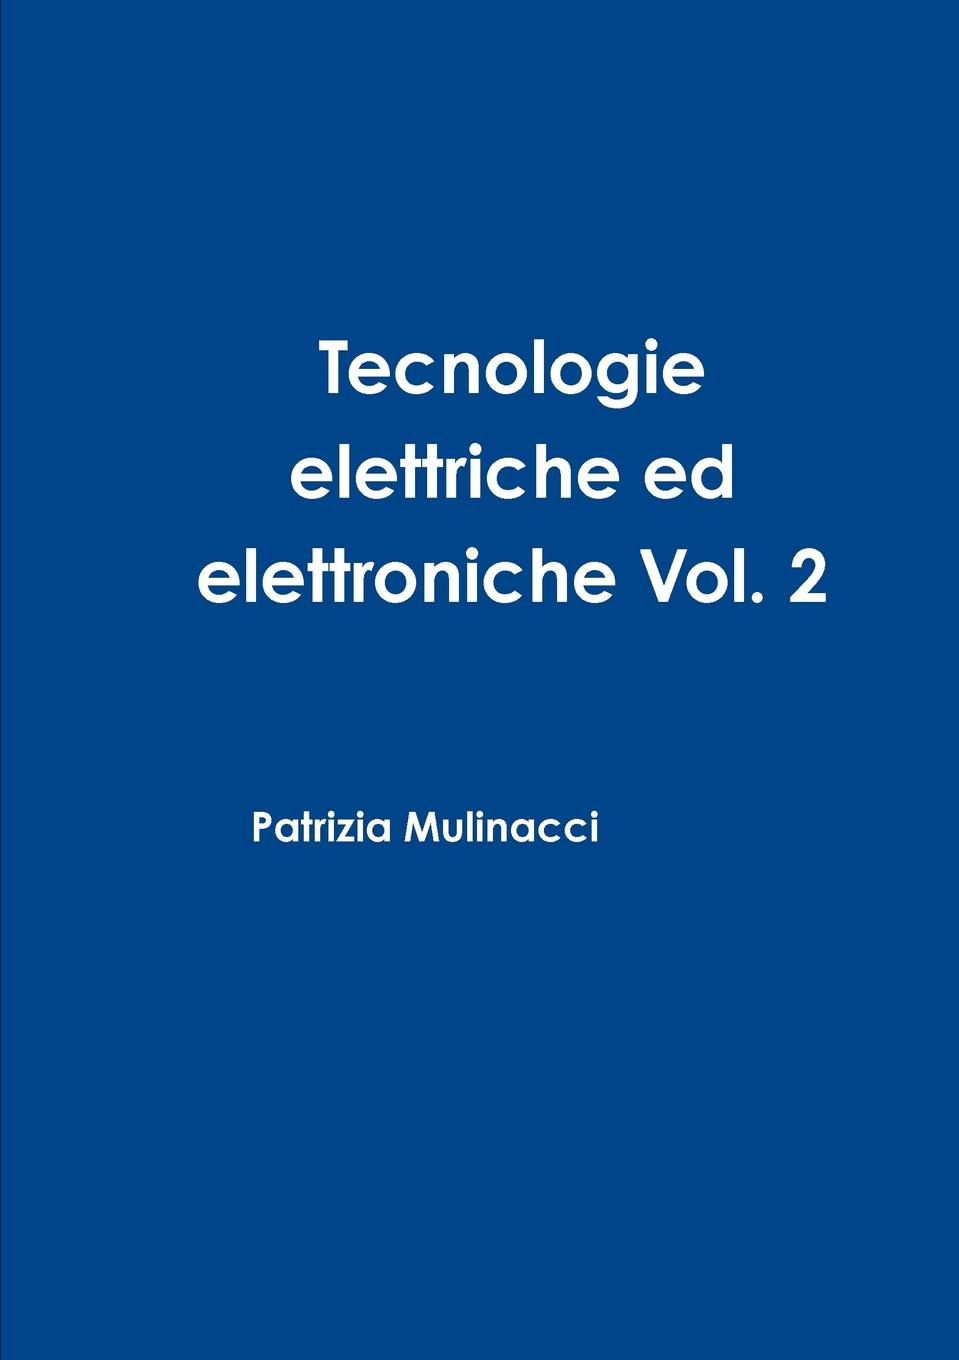 Tecnologie elettriche ed elettroniche Vol. 2